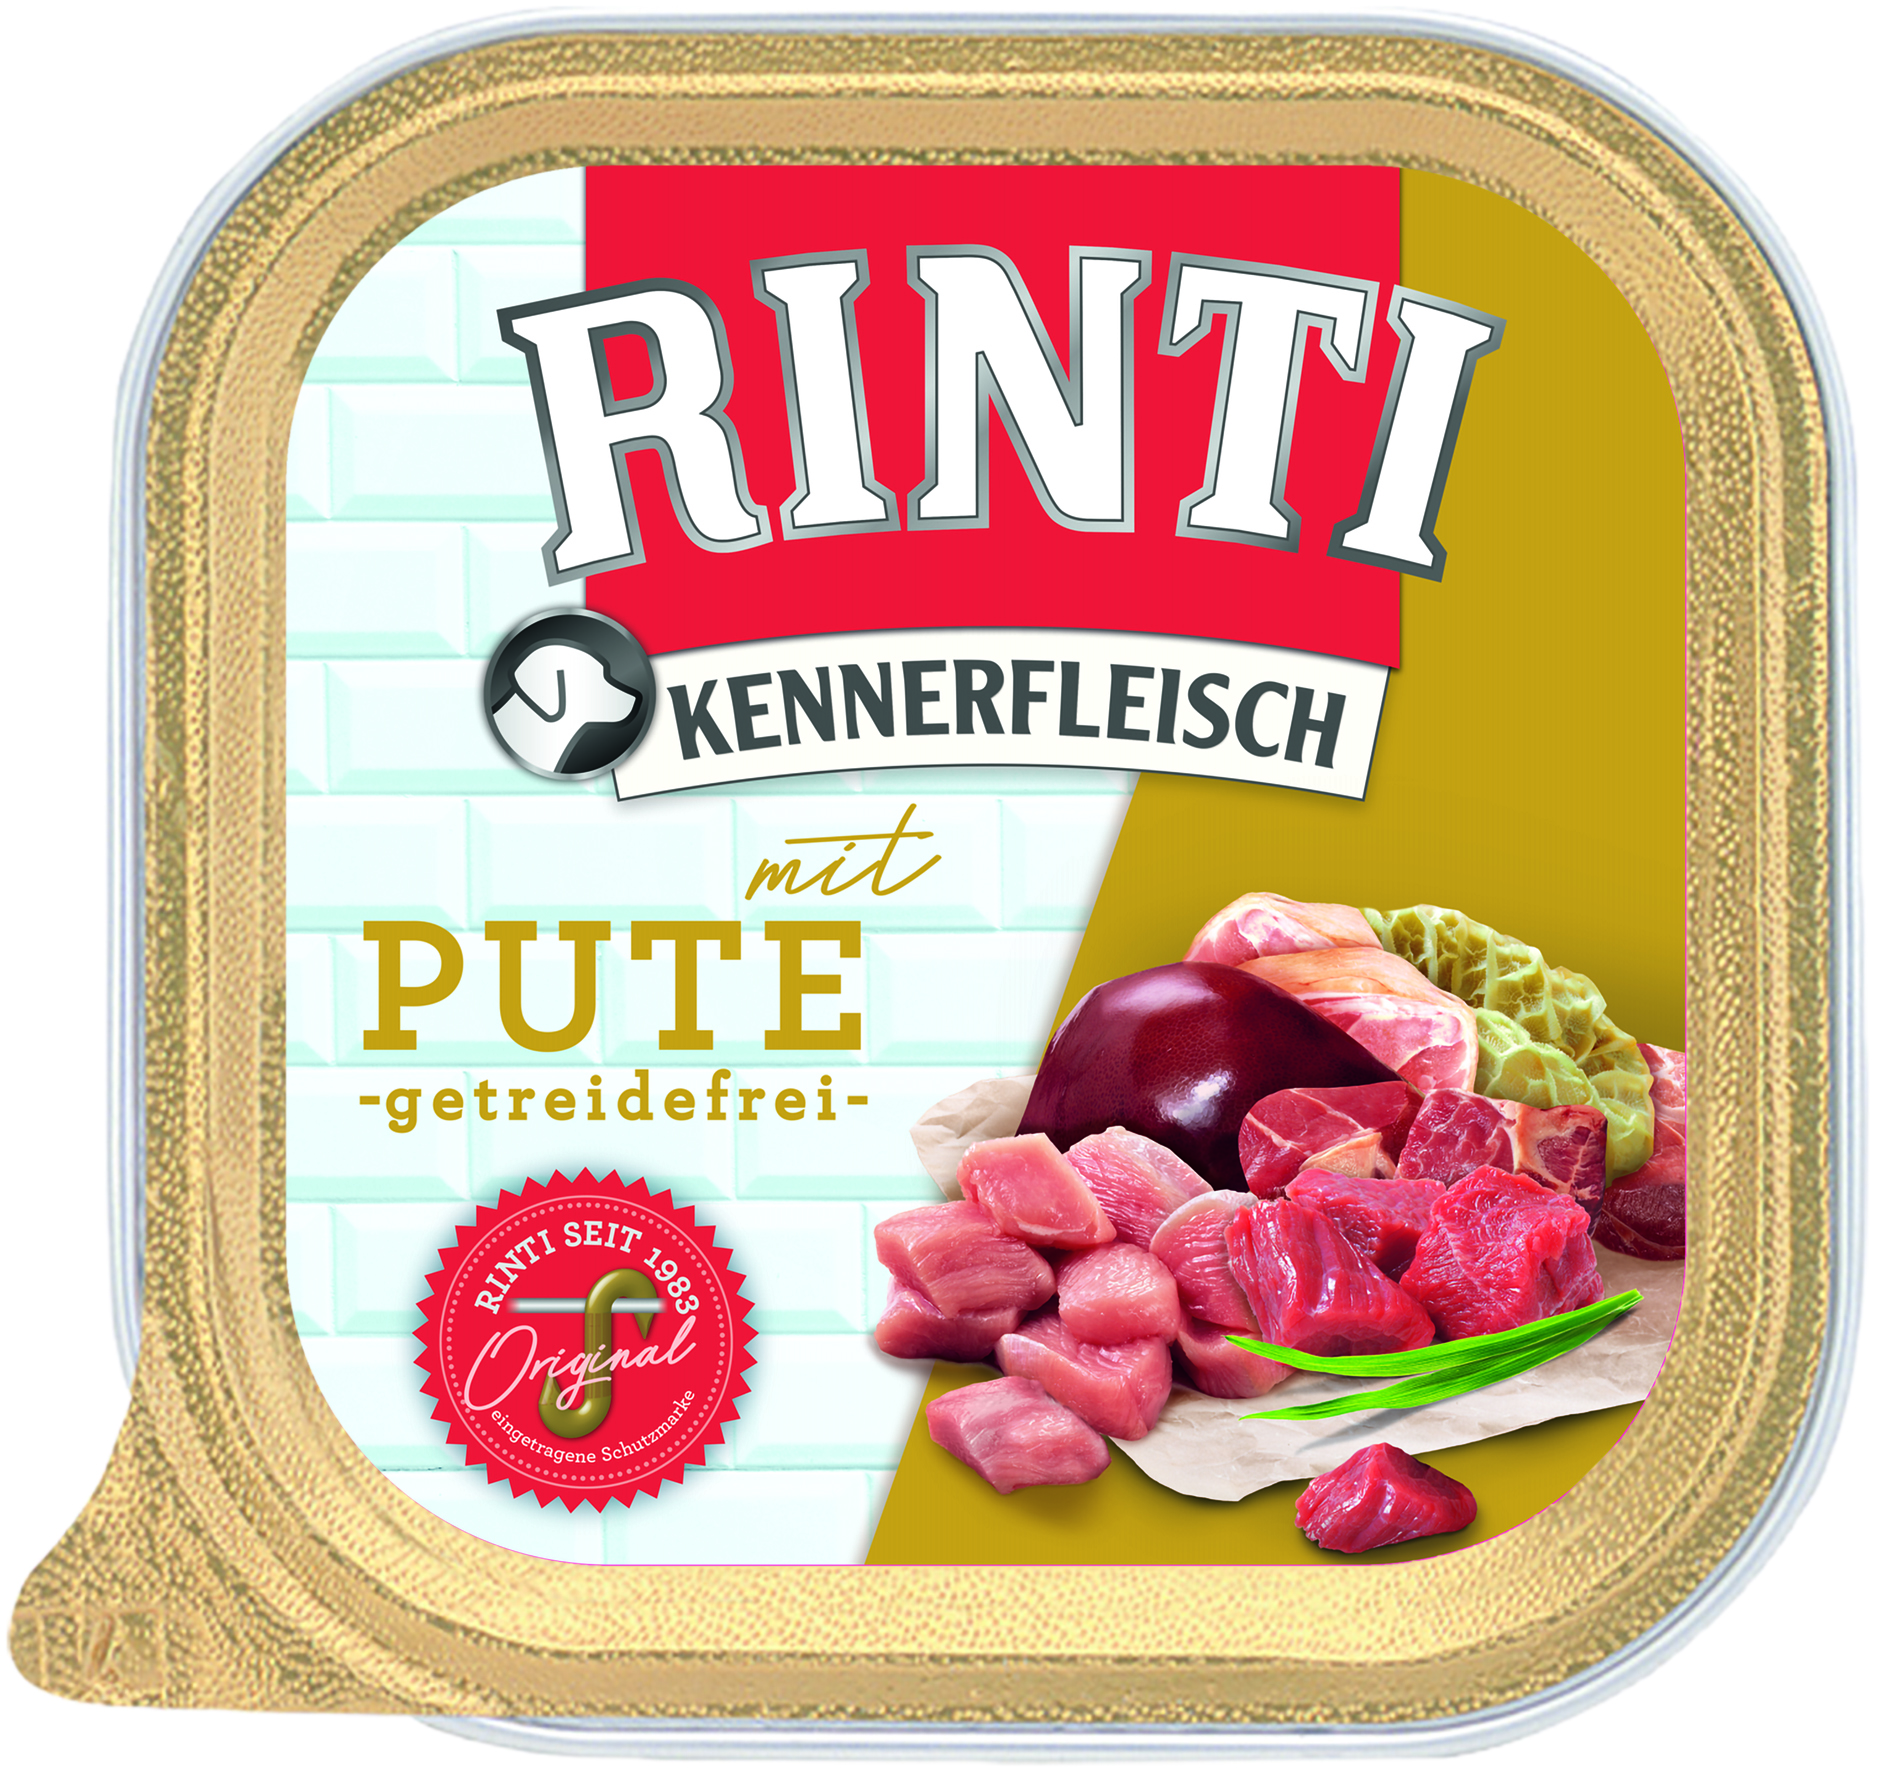 Rinti Kennerfleisch Plus Pute 300g